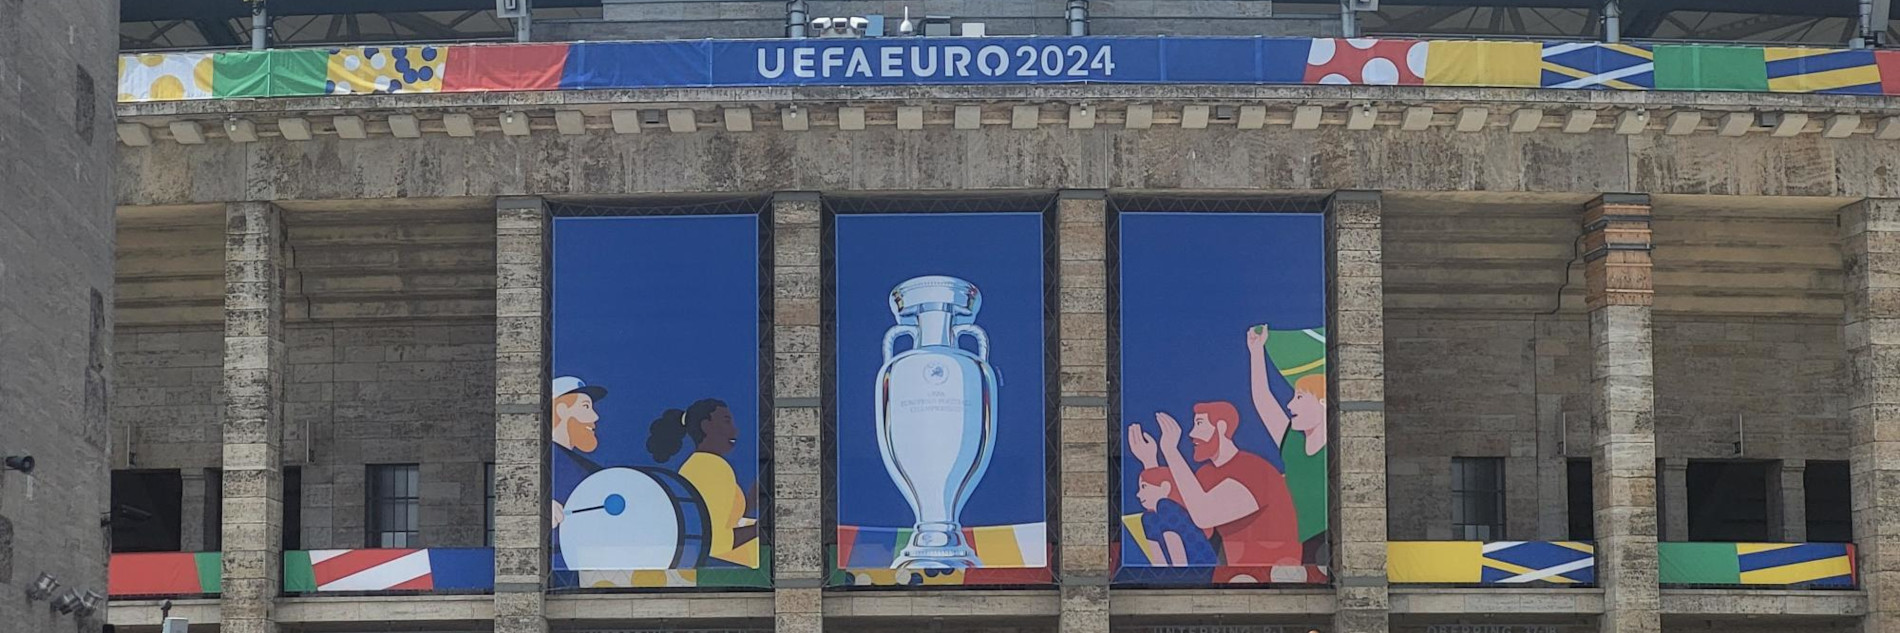 Blick auf die Außenfassade eines Stadions mit buntem Branding der EURO2024 inklusive einem Pokal sowie einem "UEFA EURO 2024"-Schriftzug.